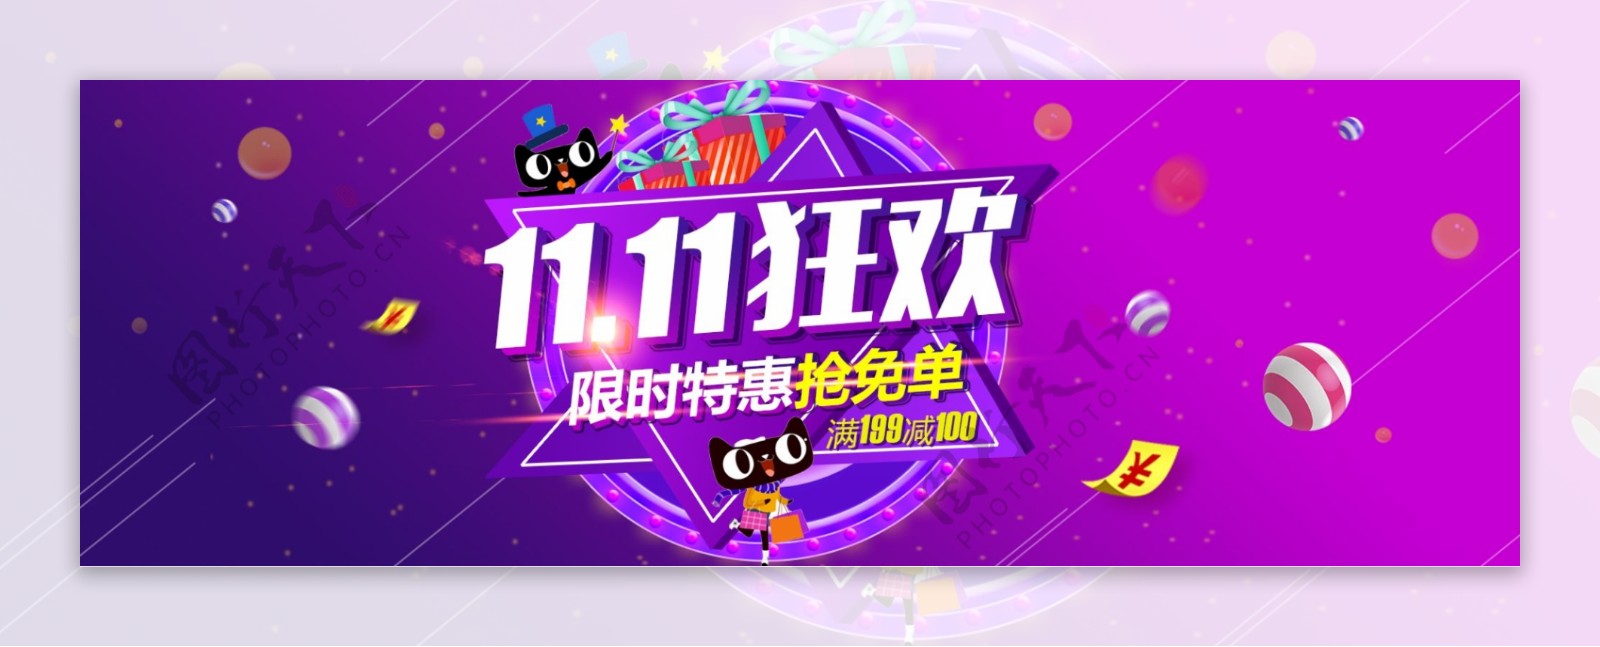 紫色炫酷双十一狂欢礼盒球体礼物钱淘宝天猫满减促销海报banner